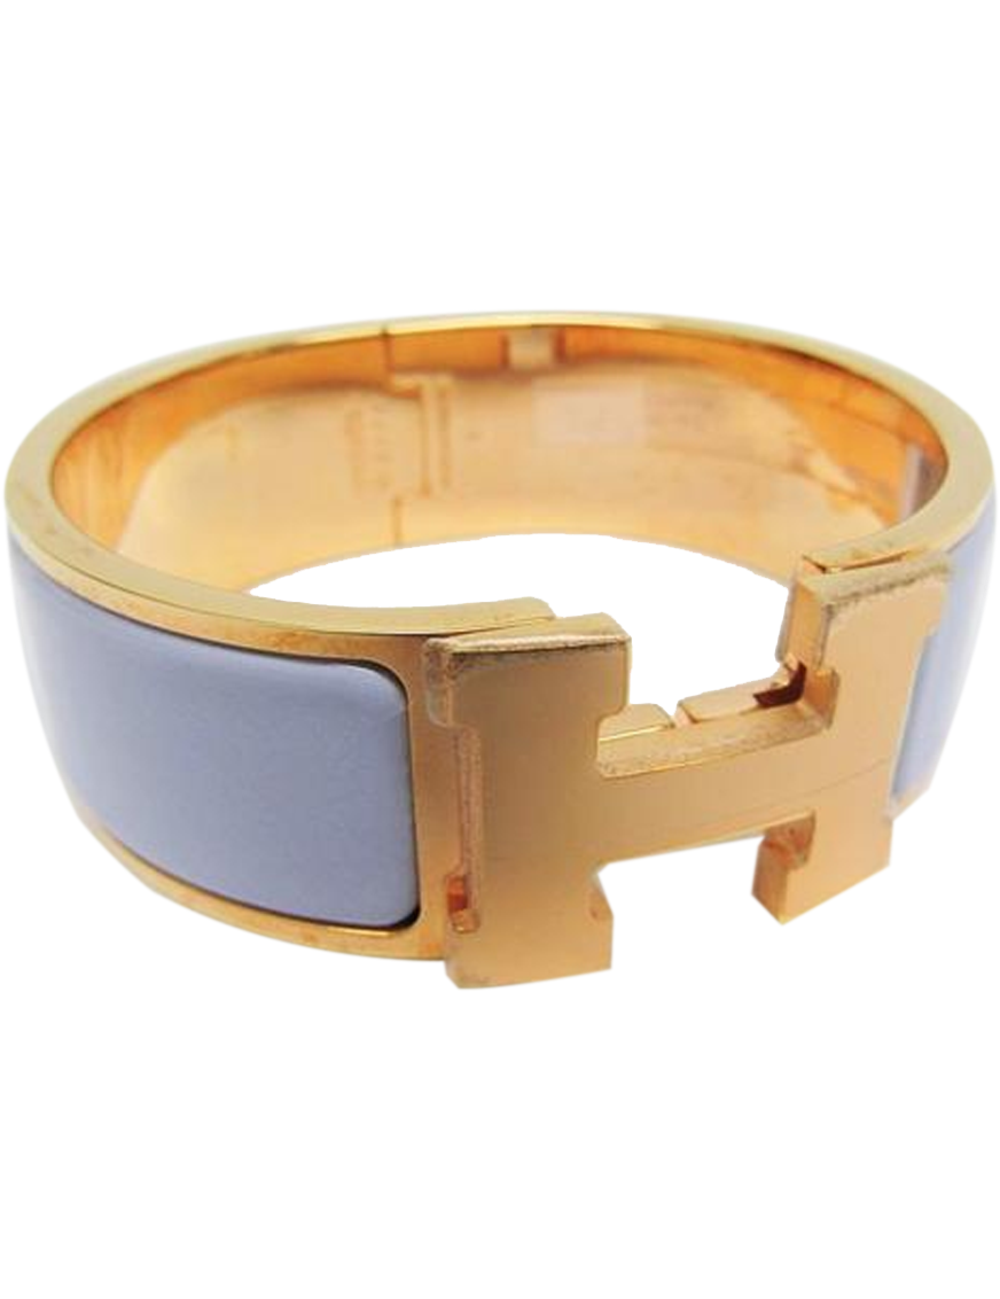 很好 這是愛馬仕（Hermes）的時尚手鍊，既經典又現代。它是一條拋光的金質錶帶，一側具有鉸鏈，並在突出側打開了可旋轉的愛馬仕